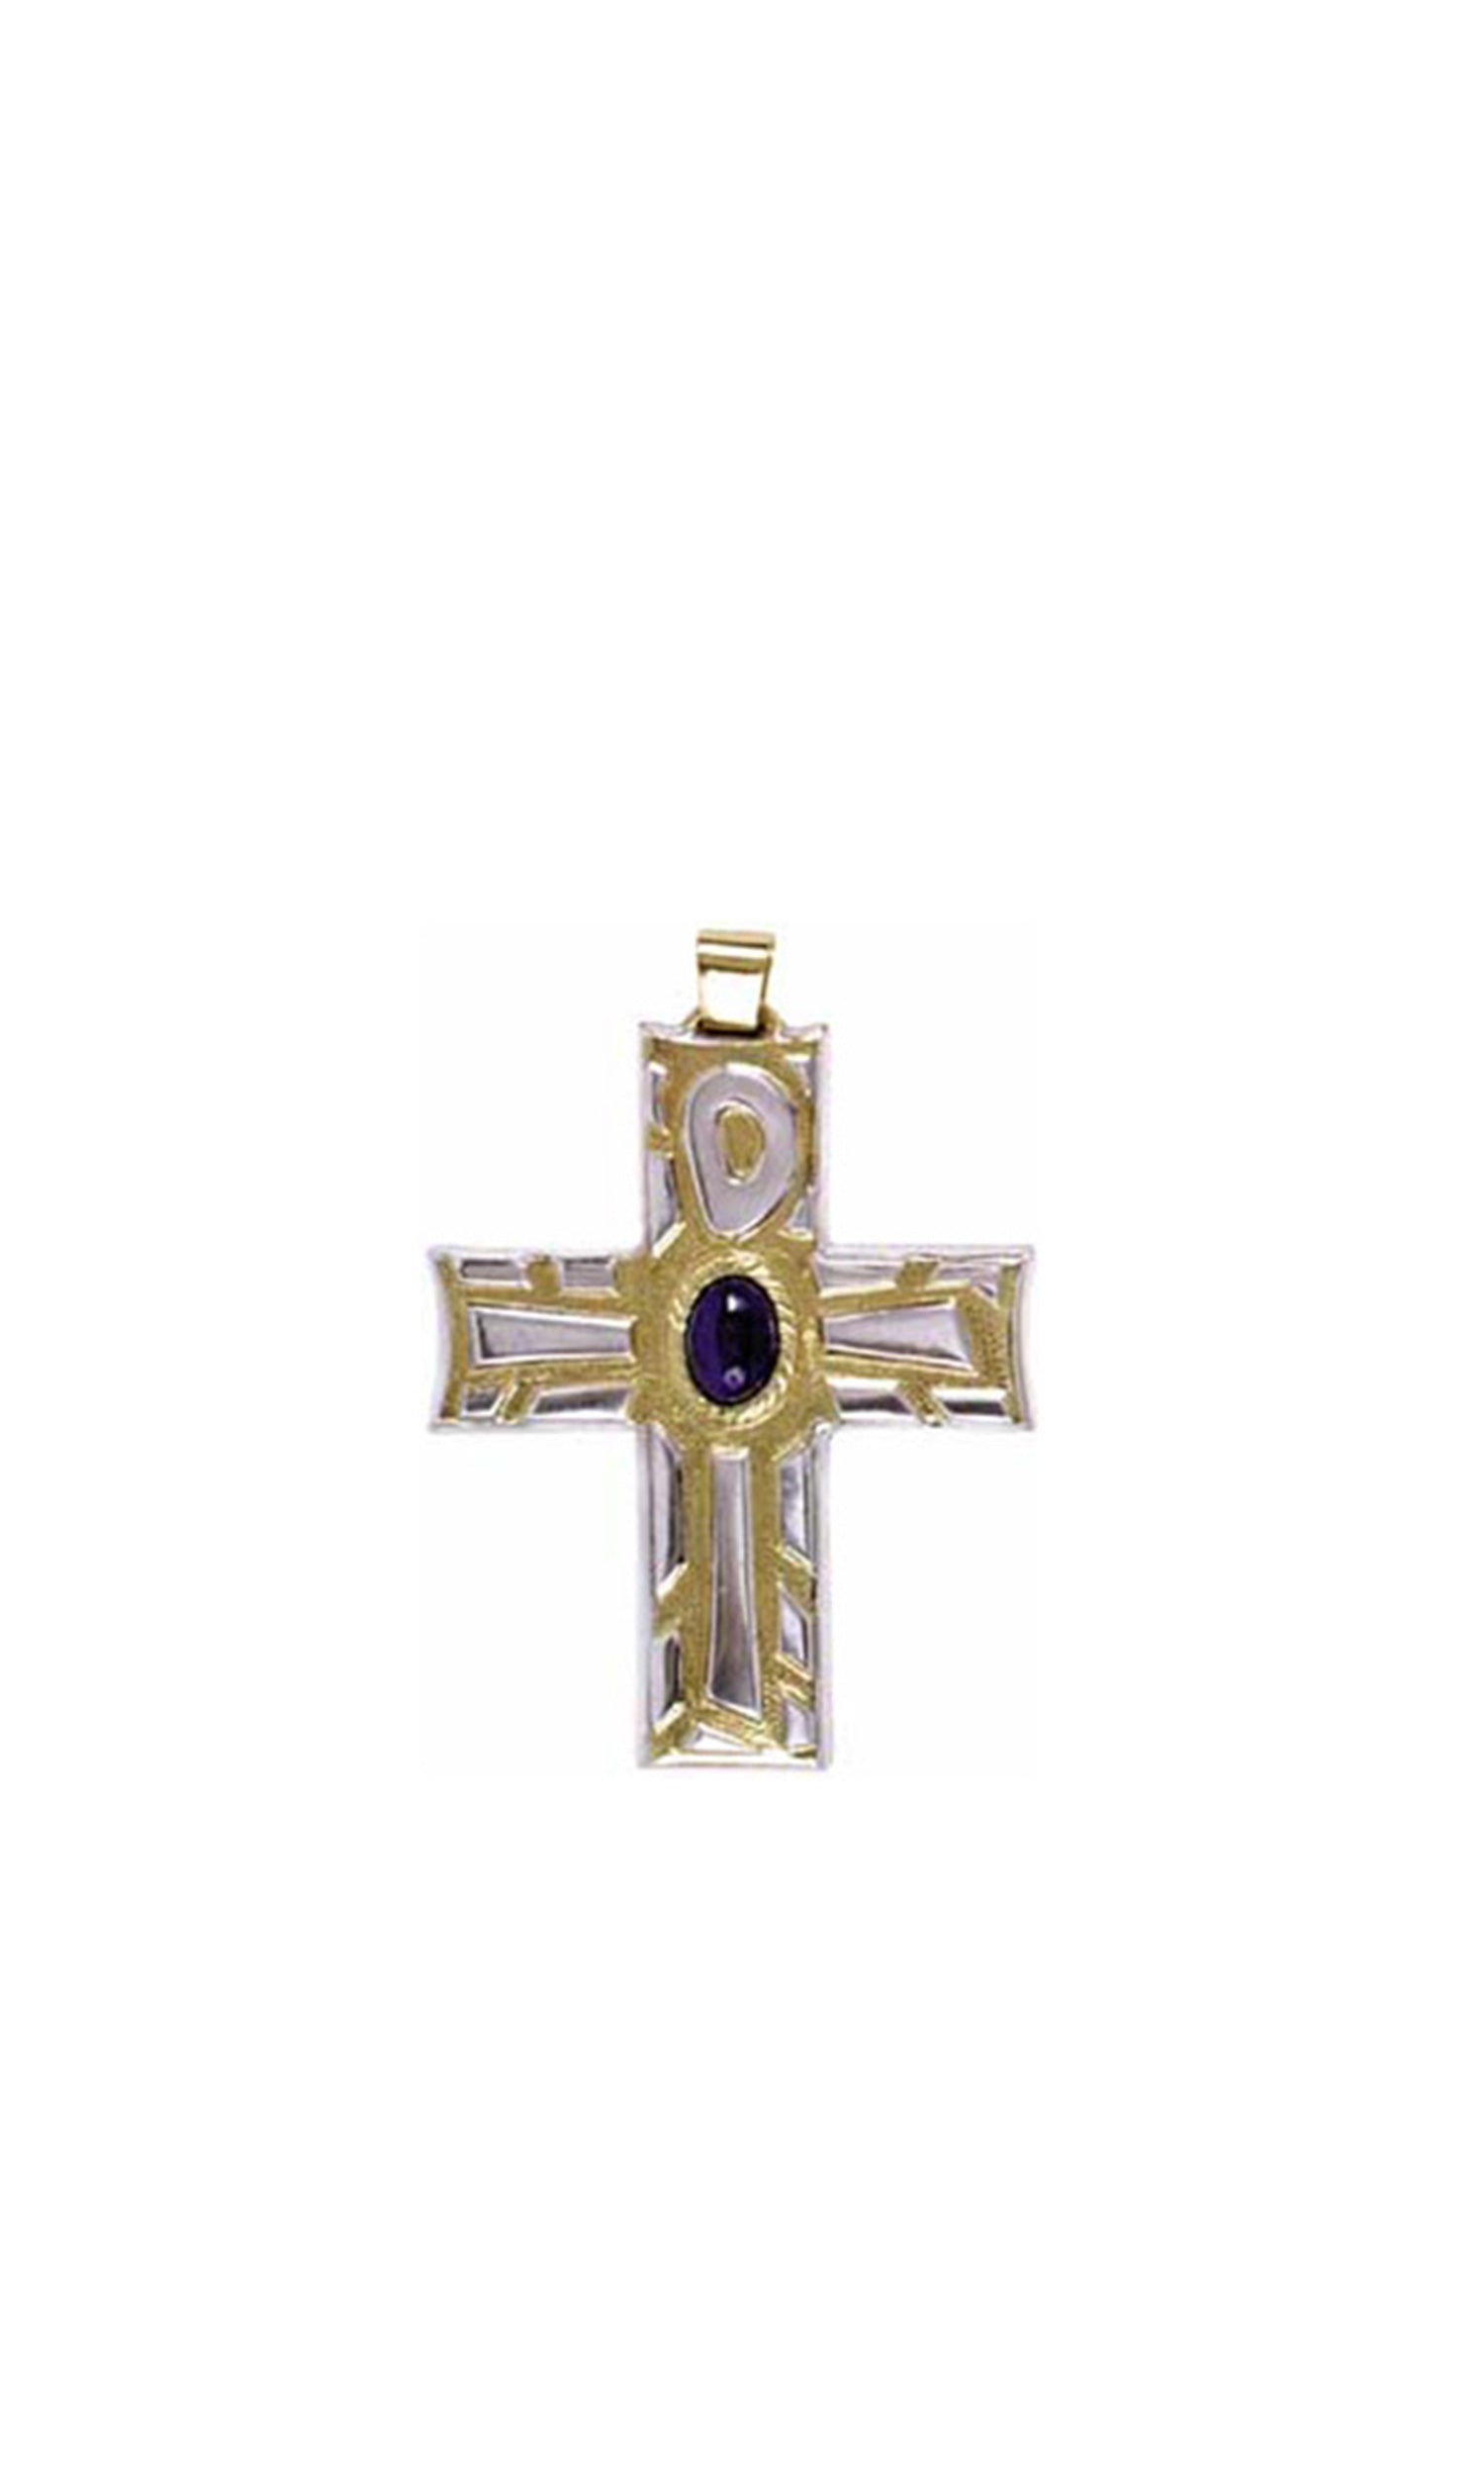 Croce pettorale sacra Bicolore oro e Argento con Pietra dura scura